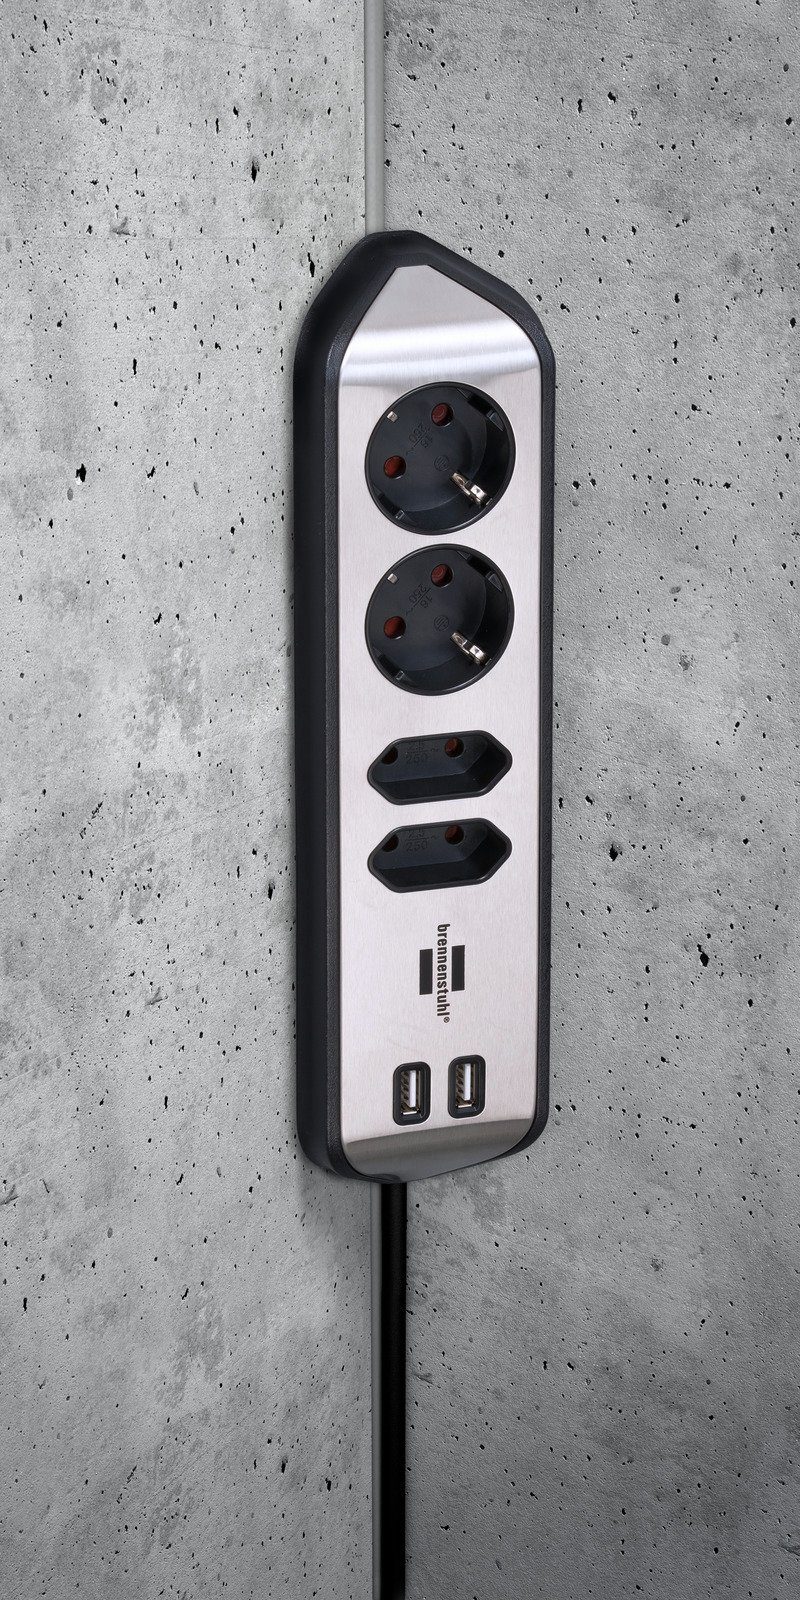 Steckdosenleiste 2x Euro-Steckdosen, USB-Ladefunktion Brennenstuhl estilo Schutzkontakt-Steckdosen, 2x 4-fach,